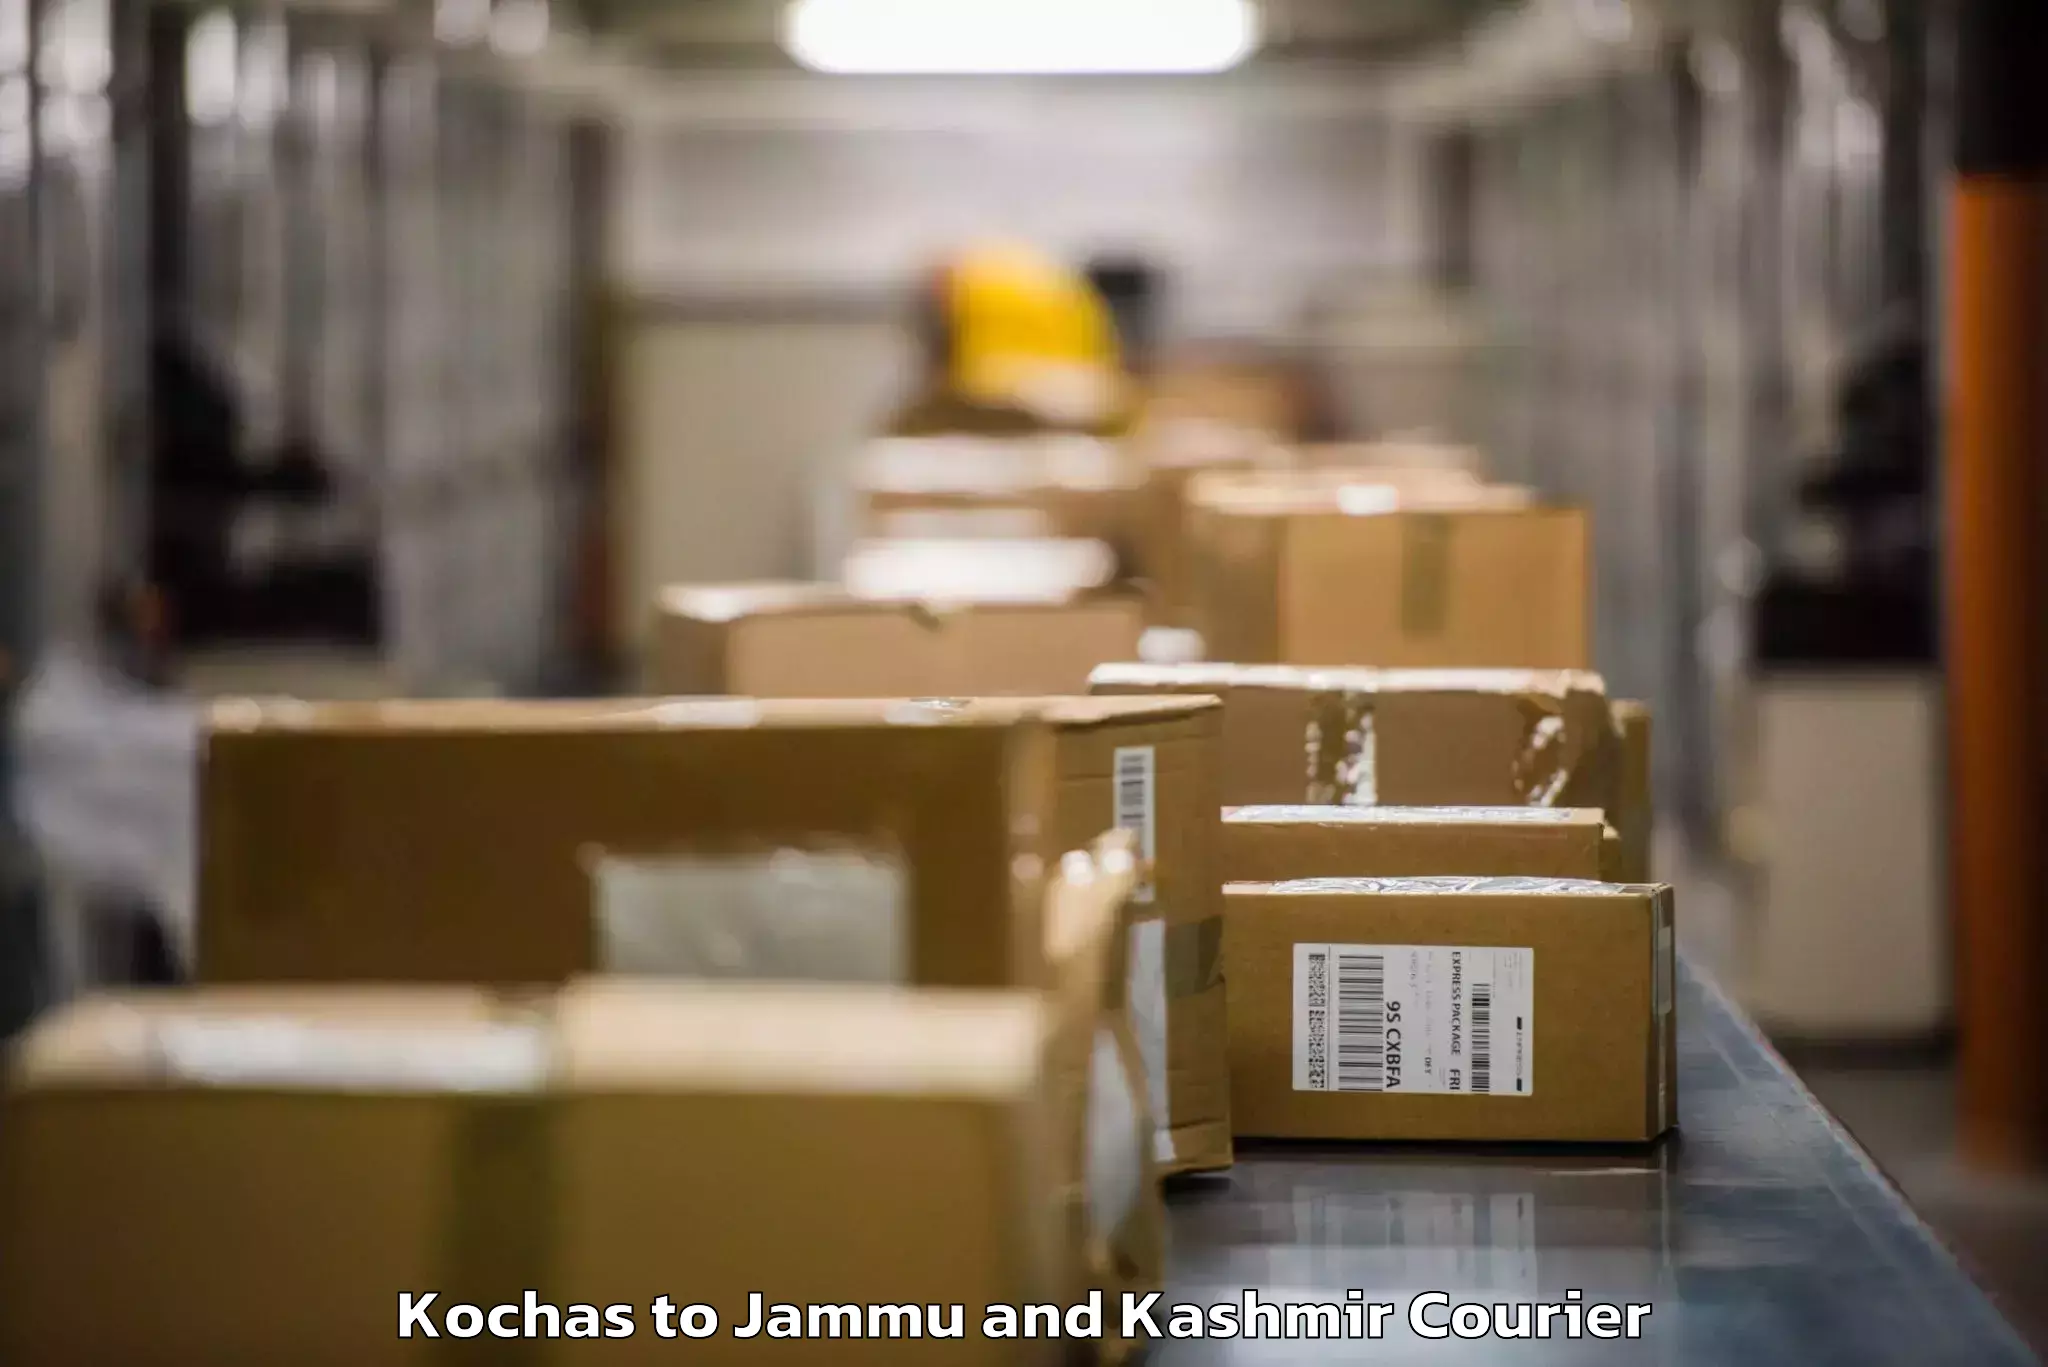 Luggage shipment specialists Kochas to Katra